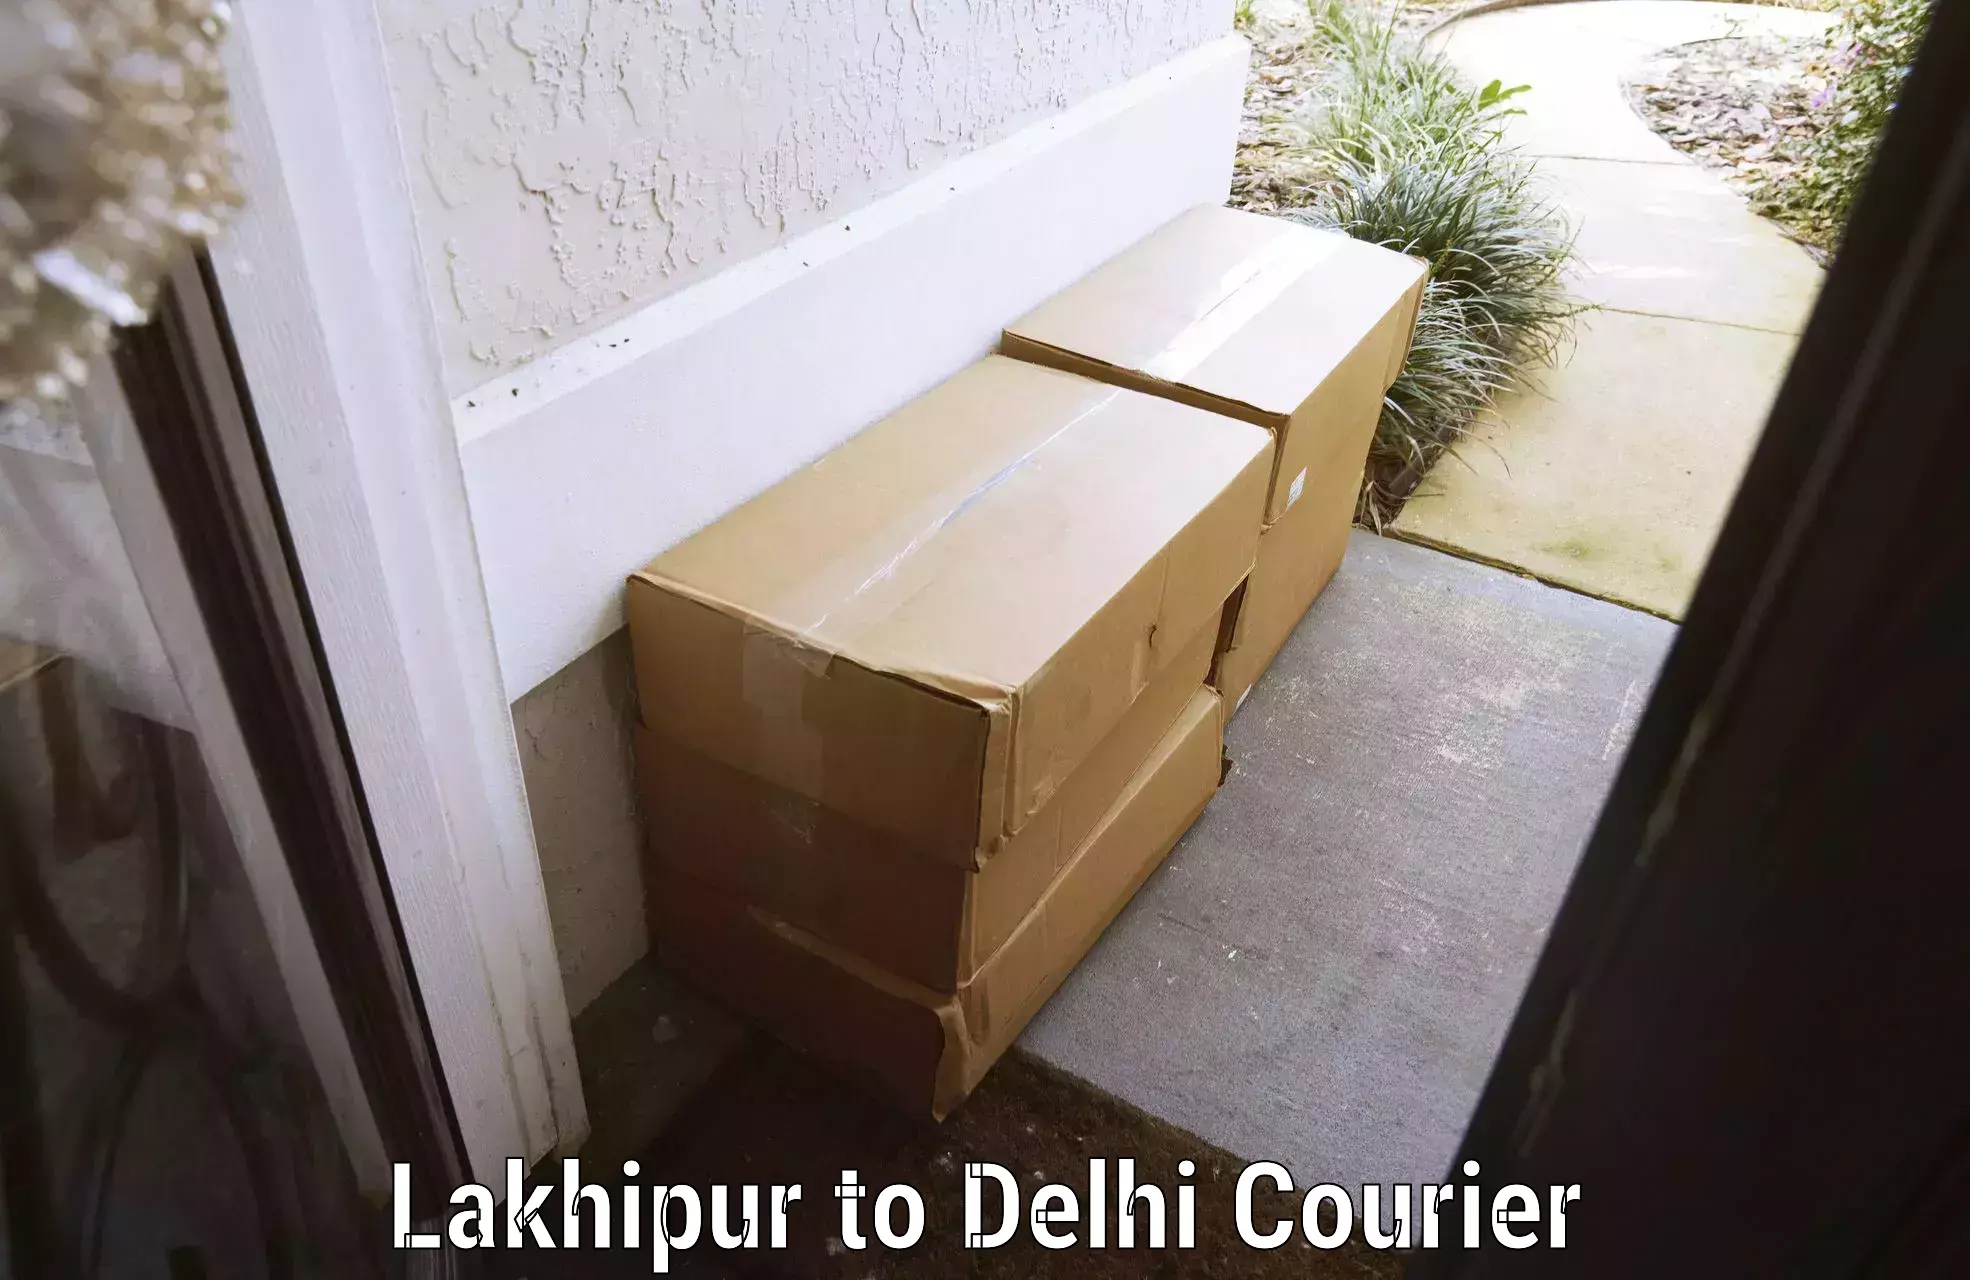 Door-to-door baggage service Lakhipur to East Delhi